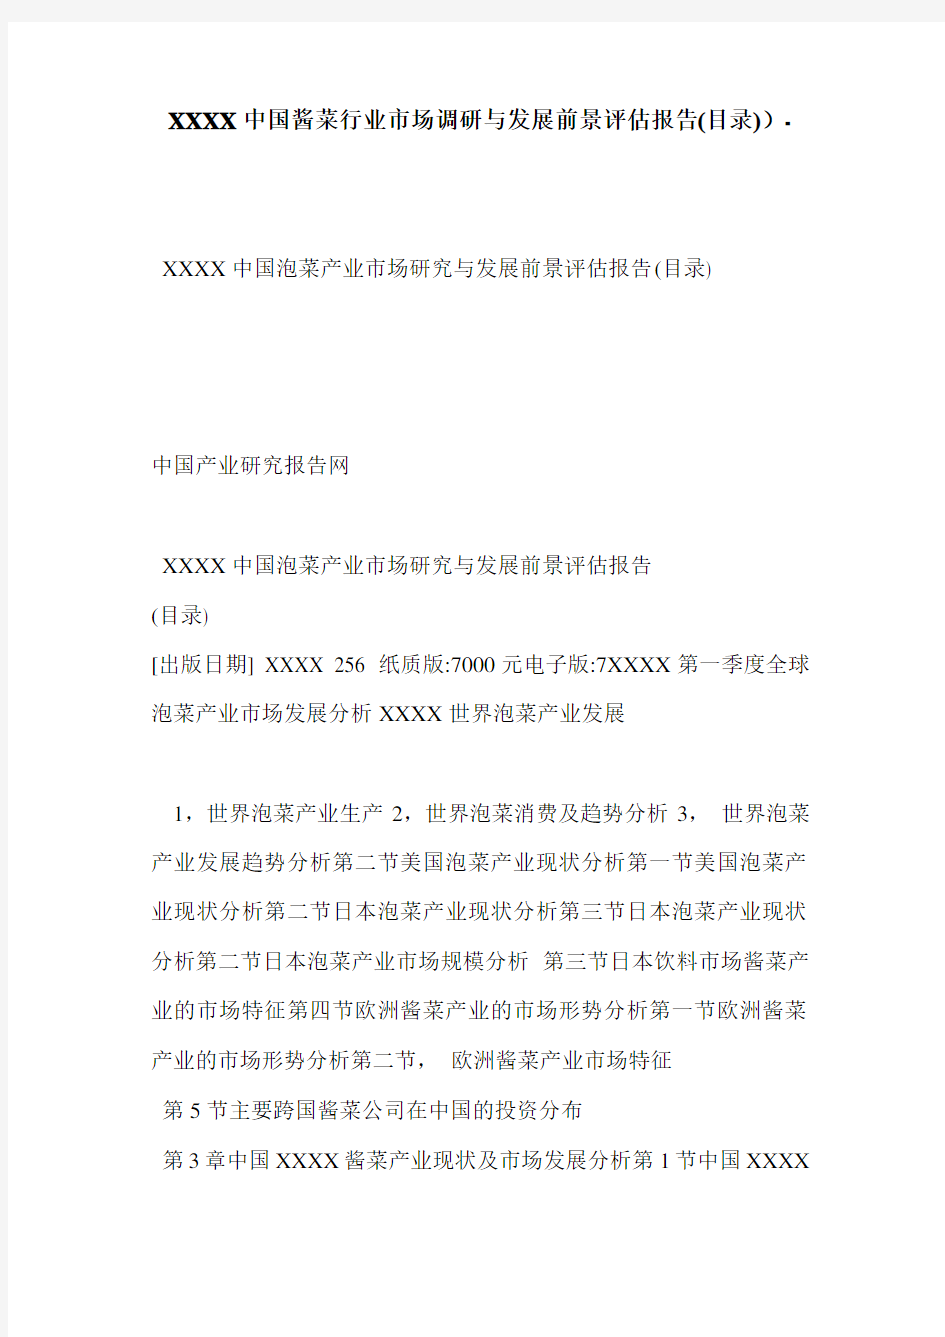 XXXX中国酱菜行业市场调研与发展前景评估报告(目录))-